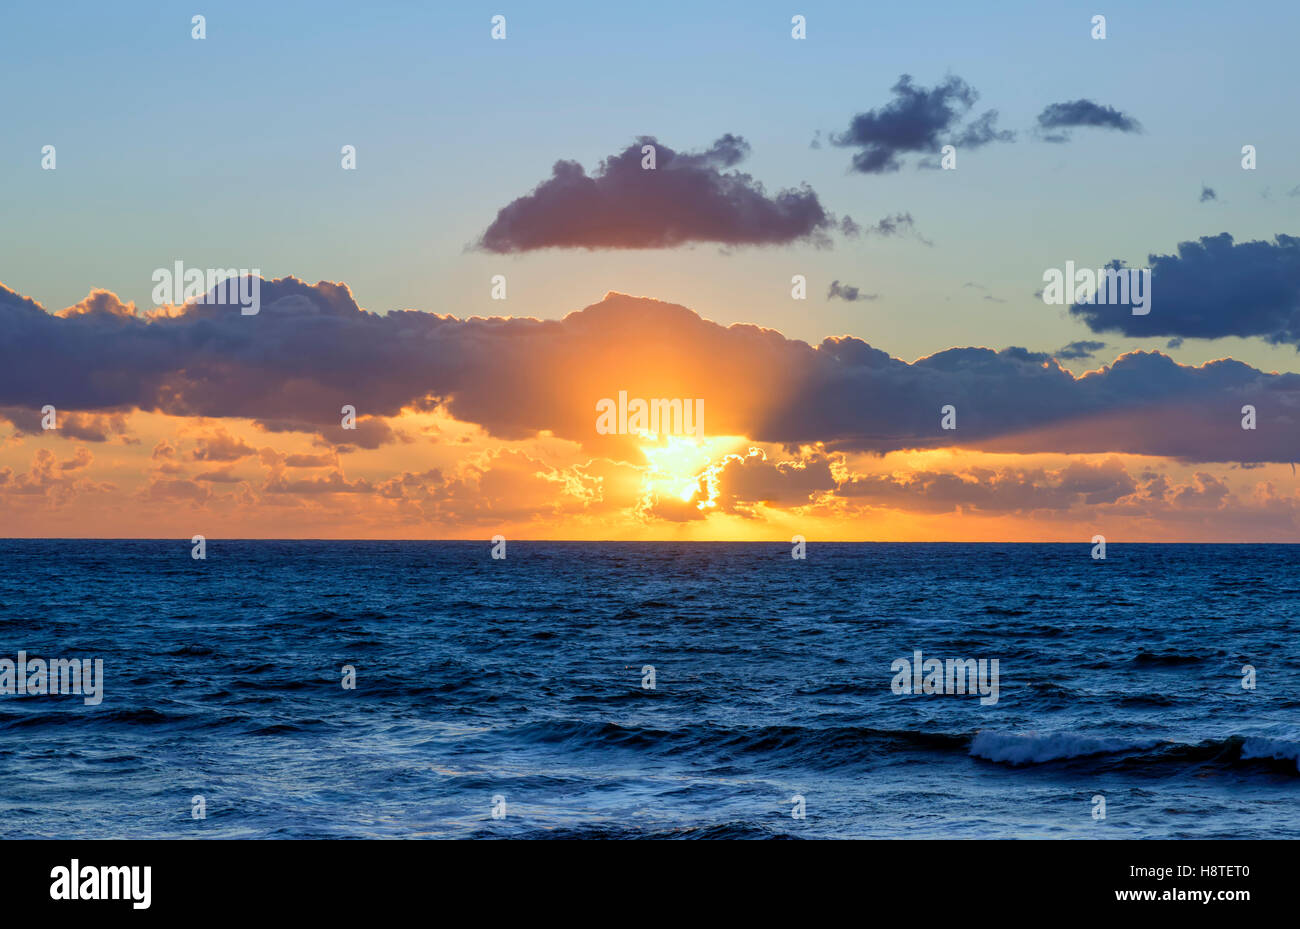 seascape, sunset, clouds, ocean, sunbeams. Stock Photo